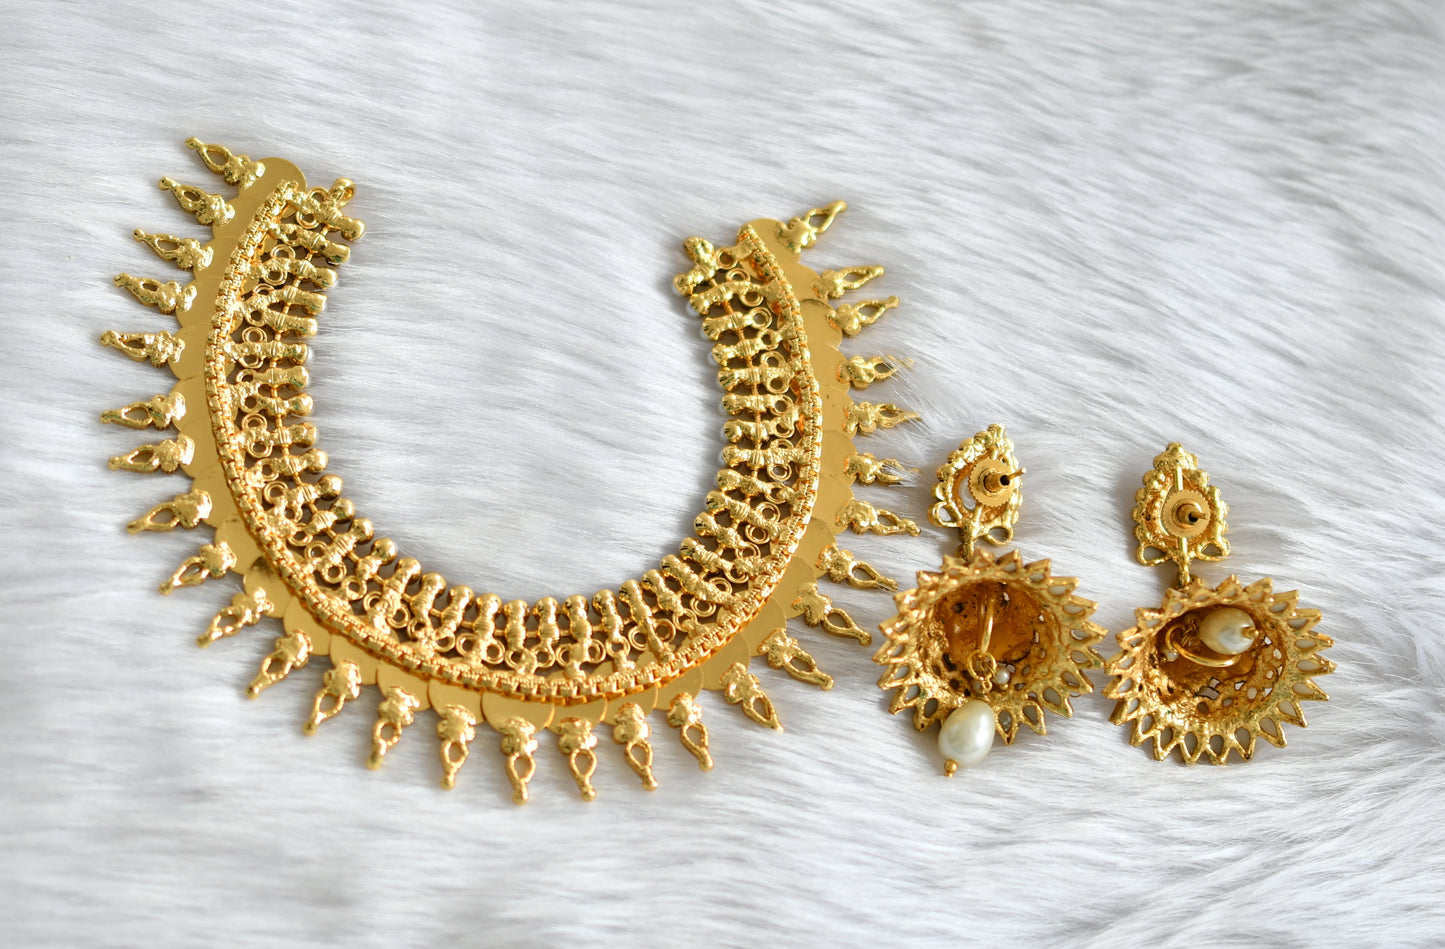 Antique pearl Lakshmi coin Necklace set dj-02160